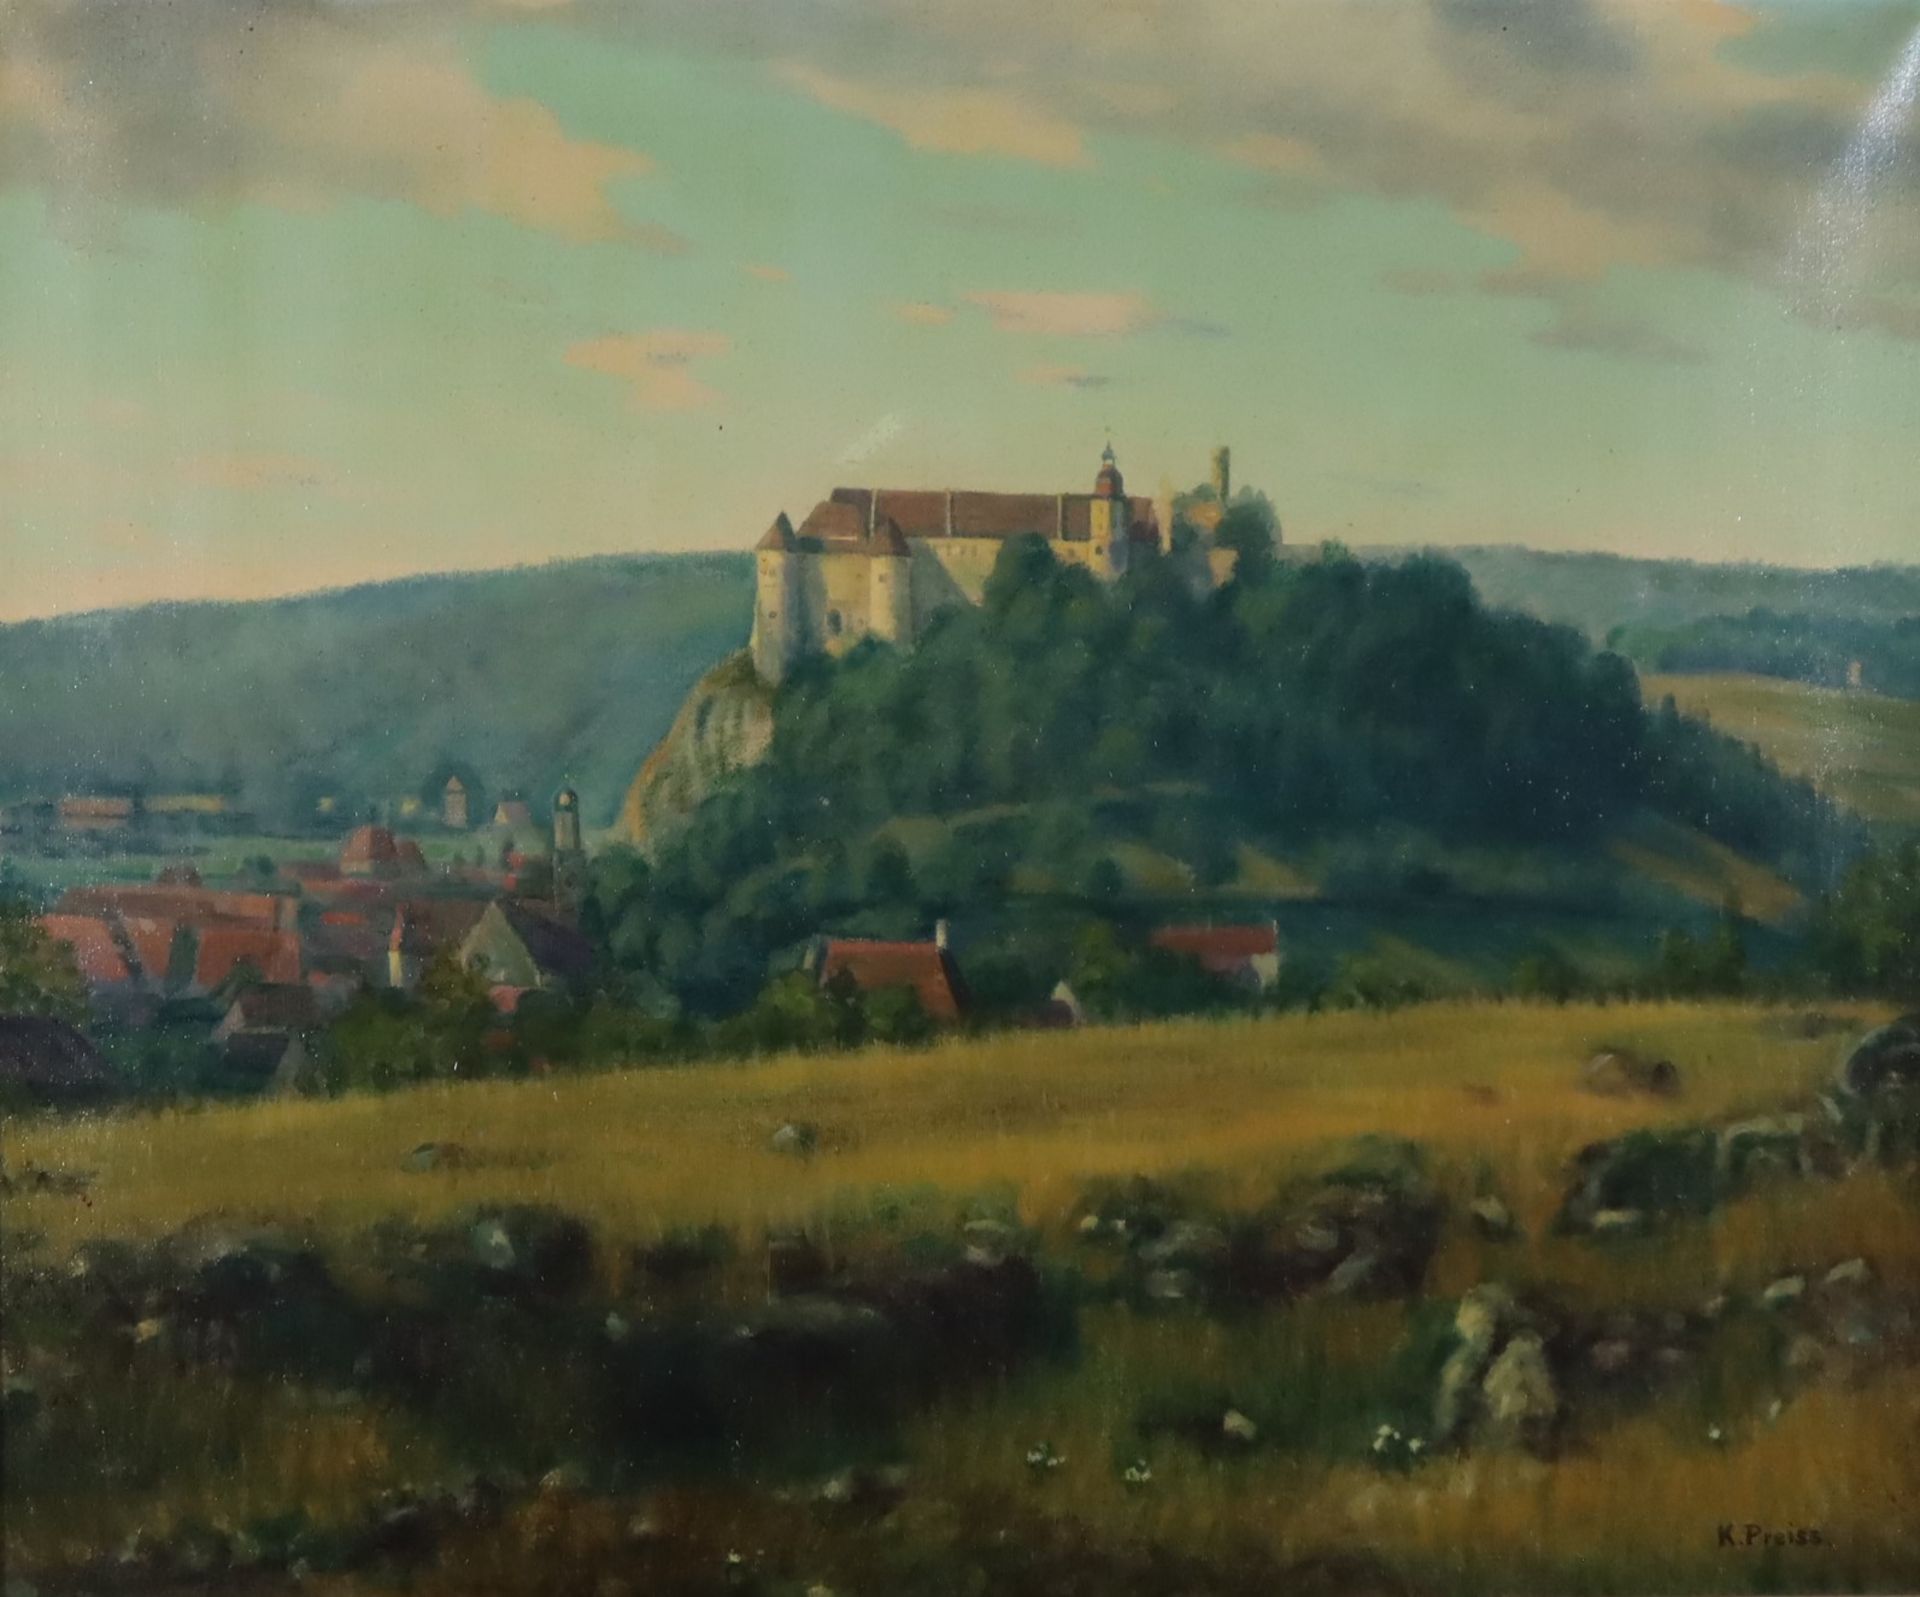 Preiss, Karl (1885 - 1960) - Hügellandschaft mit Festung, Öl auf Leinwand, unten rechts signiert "K